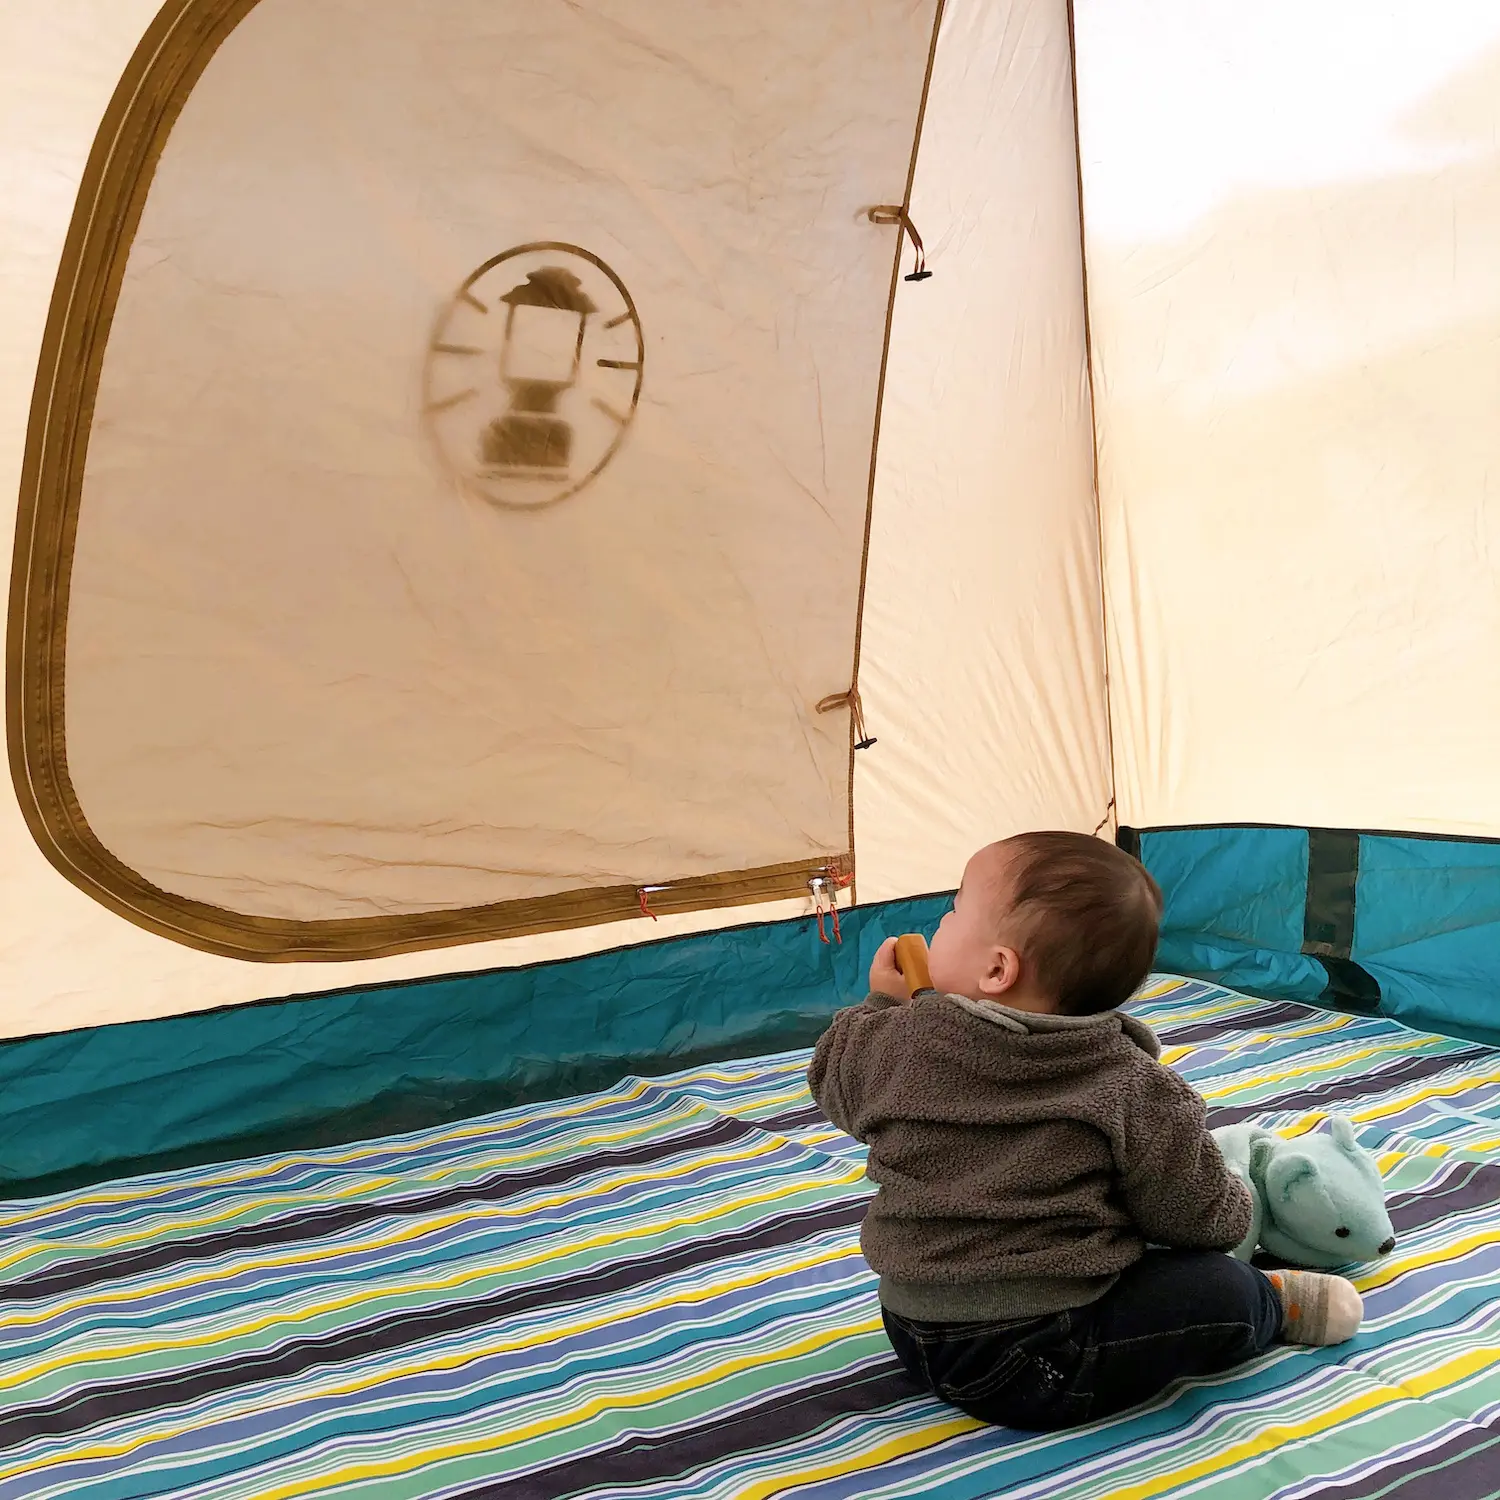 ０歳児とキャンプは可能 赤ちゃんのキャンプデビューにあると便利な持ち物は ママキャンパーの実体験から 子育て Be Pal キャンプ アウトドア 自然派生活の情報源ビーパル